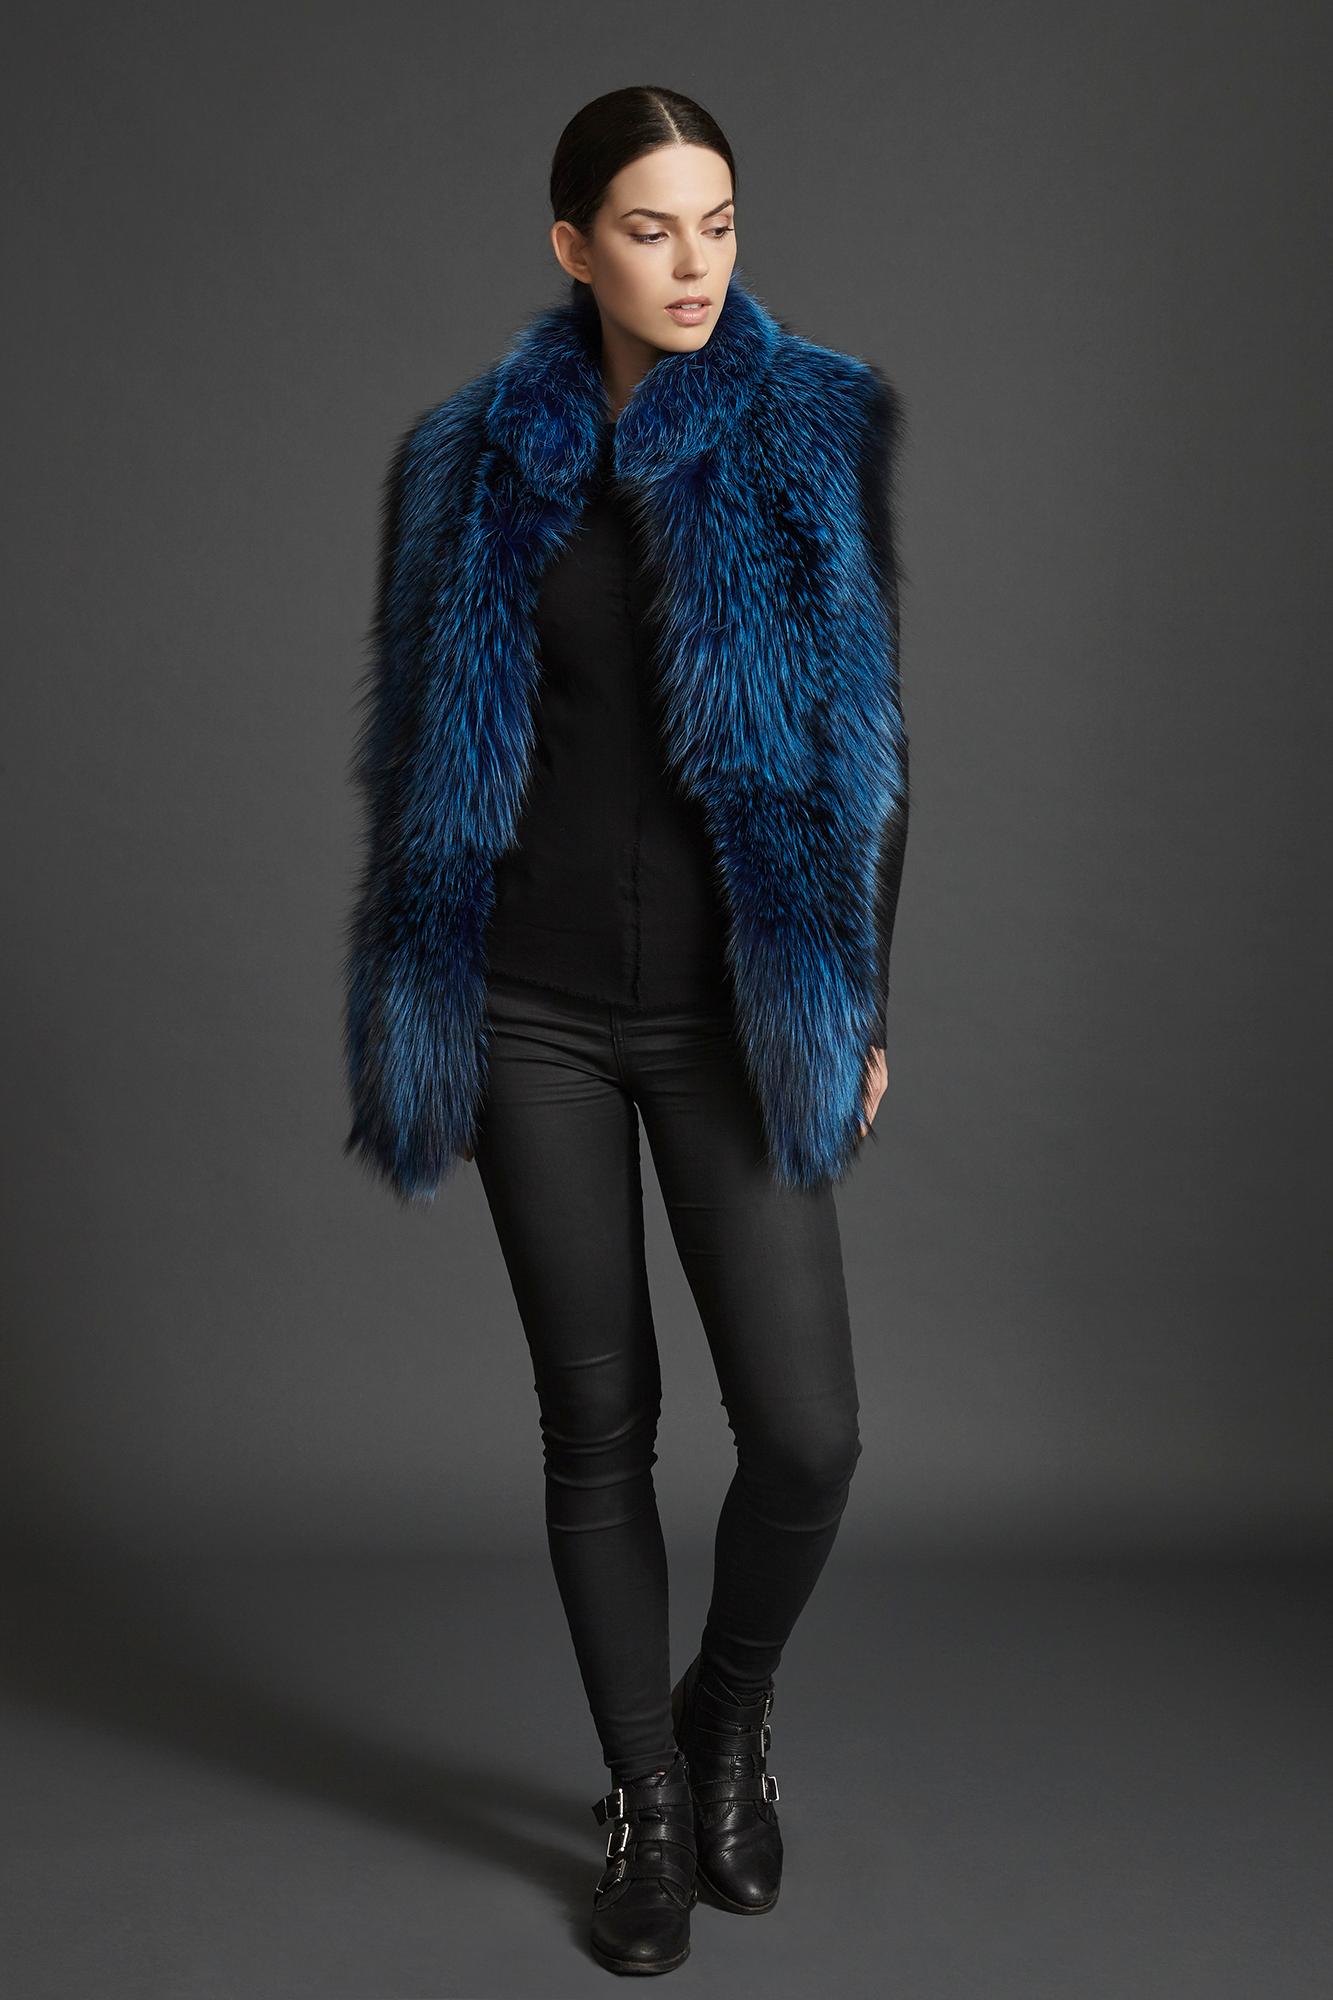 Verheyen London Nehru Collar Stole  in Lapis Blue Fox Fur - Brand New  4